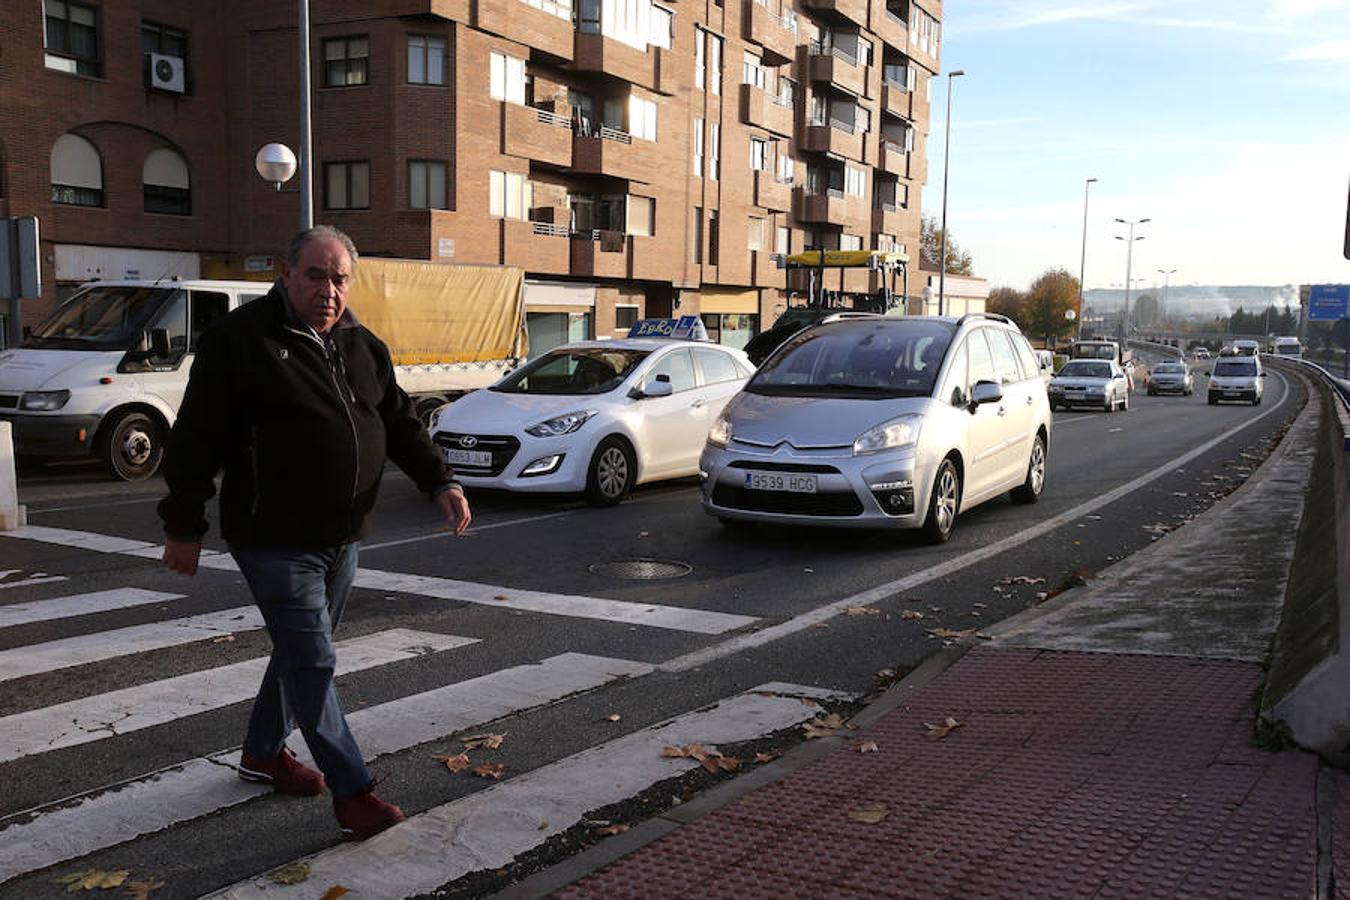 Desde hora temprana han dado comienzo en Logroño las obras de reparación del asfalto de Avenida de Madrid toda vez que las quejas vecinales han forzado a la reparación de un tramo que no es único por su grado de deterioro en la ciudad.